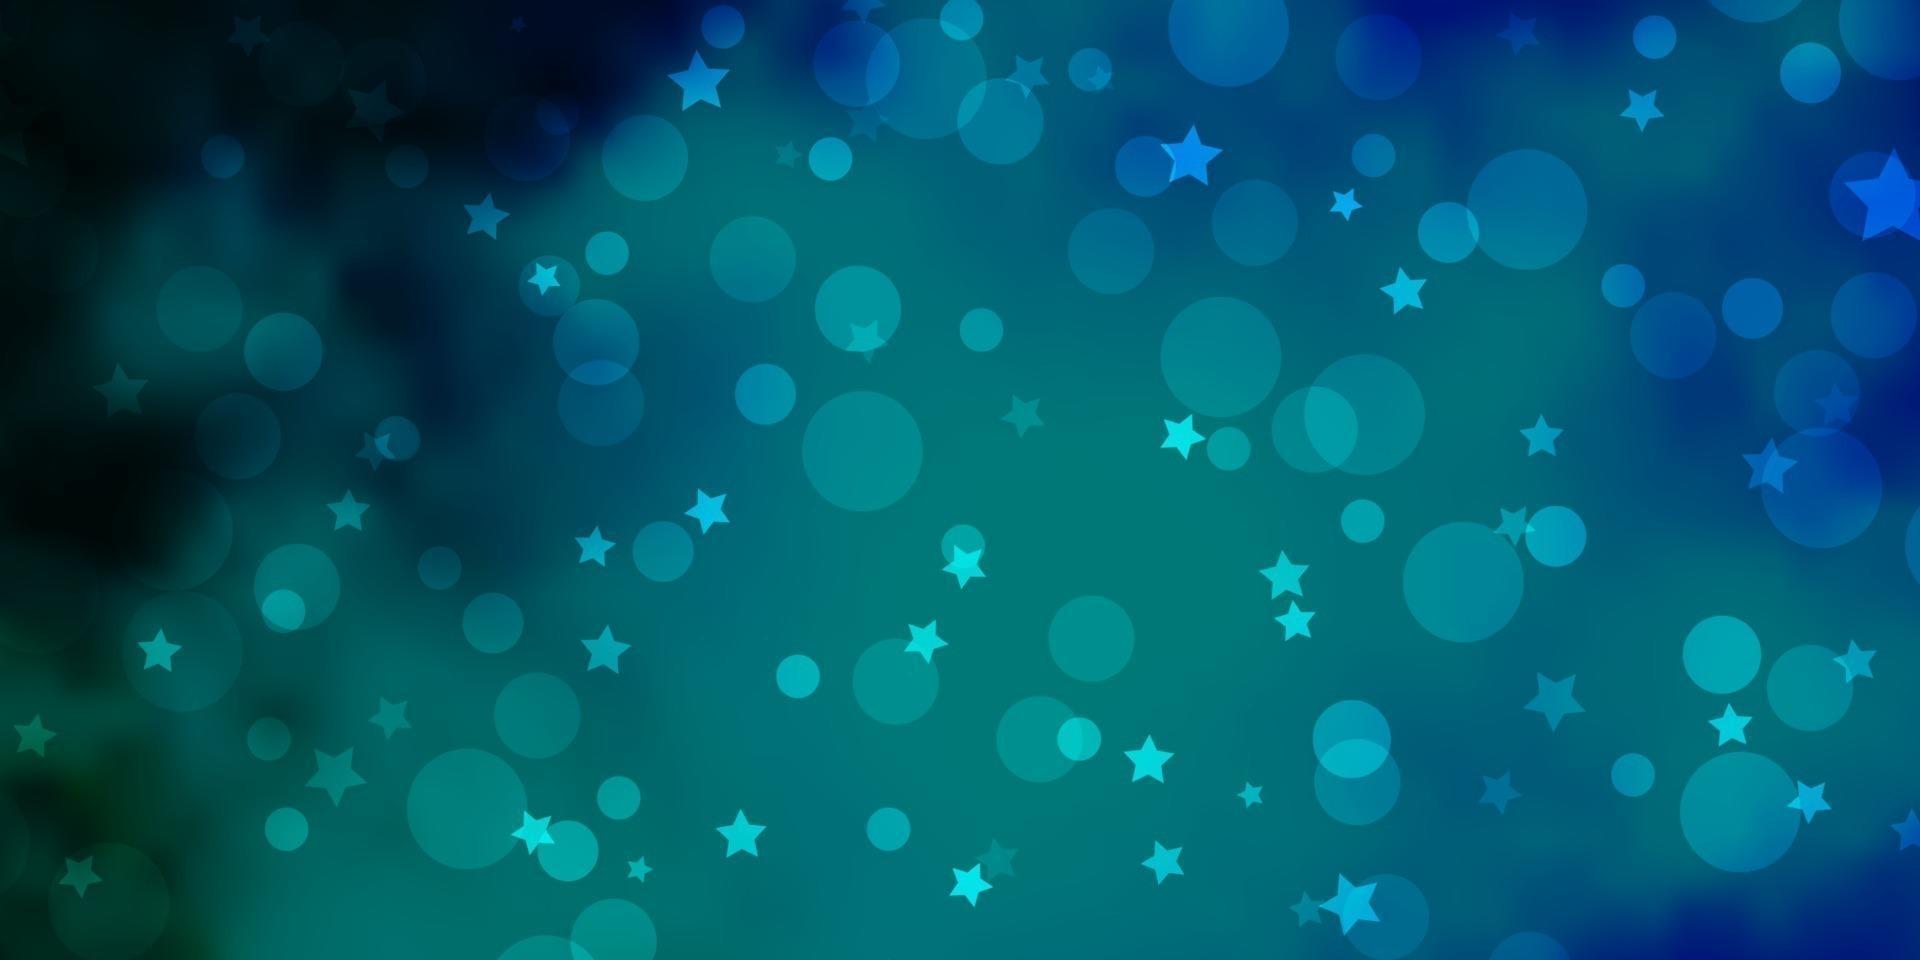 fond de vecteur bleu foncé avec des cercles, des étoiles.